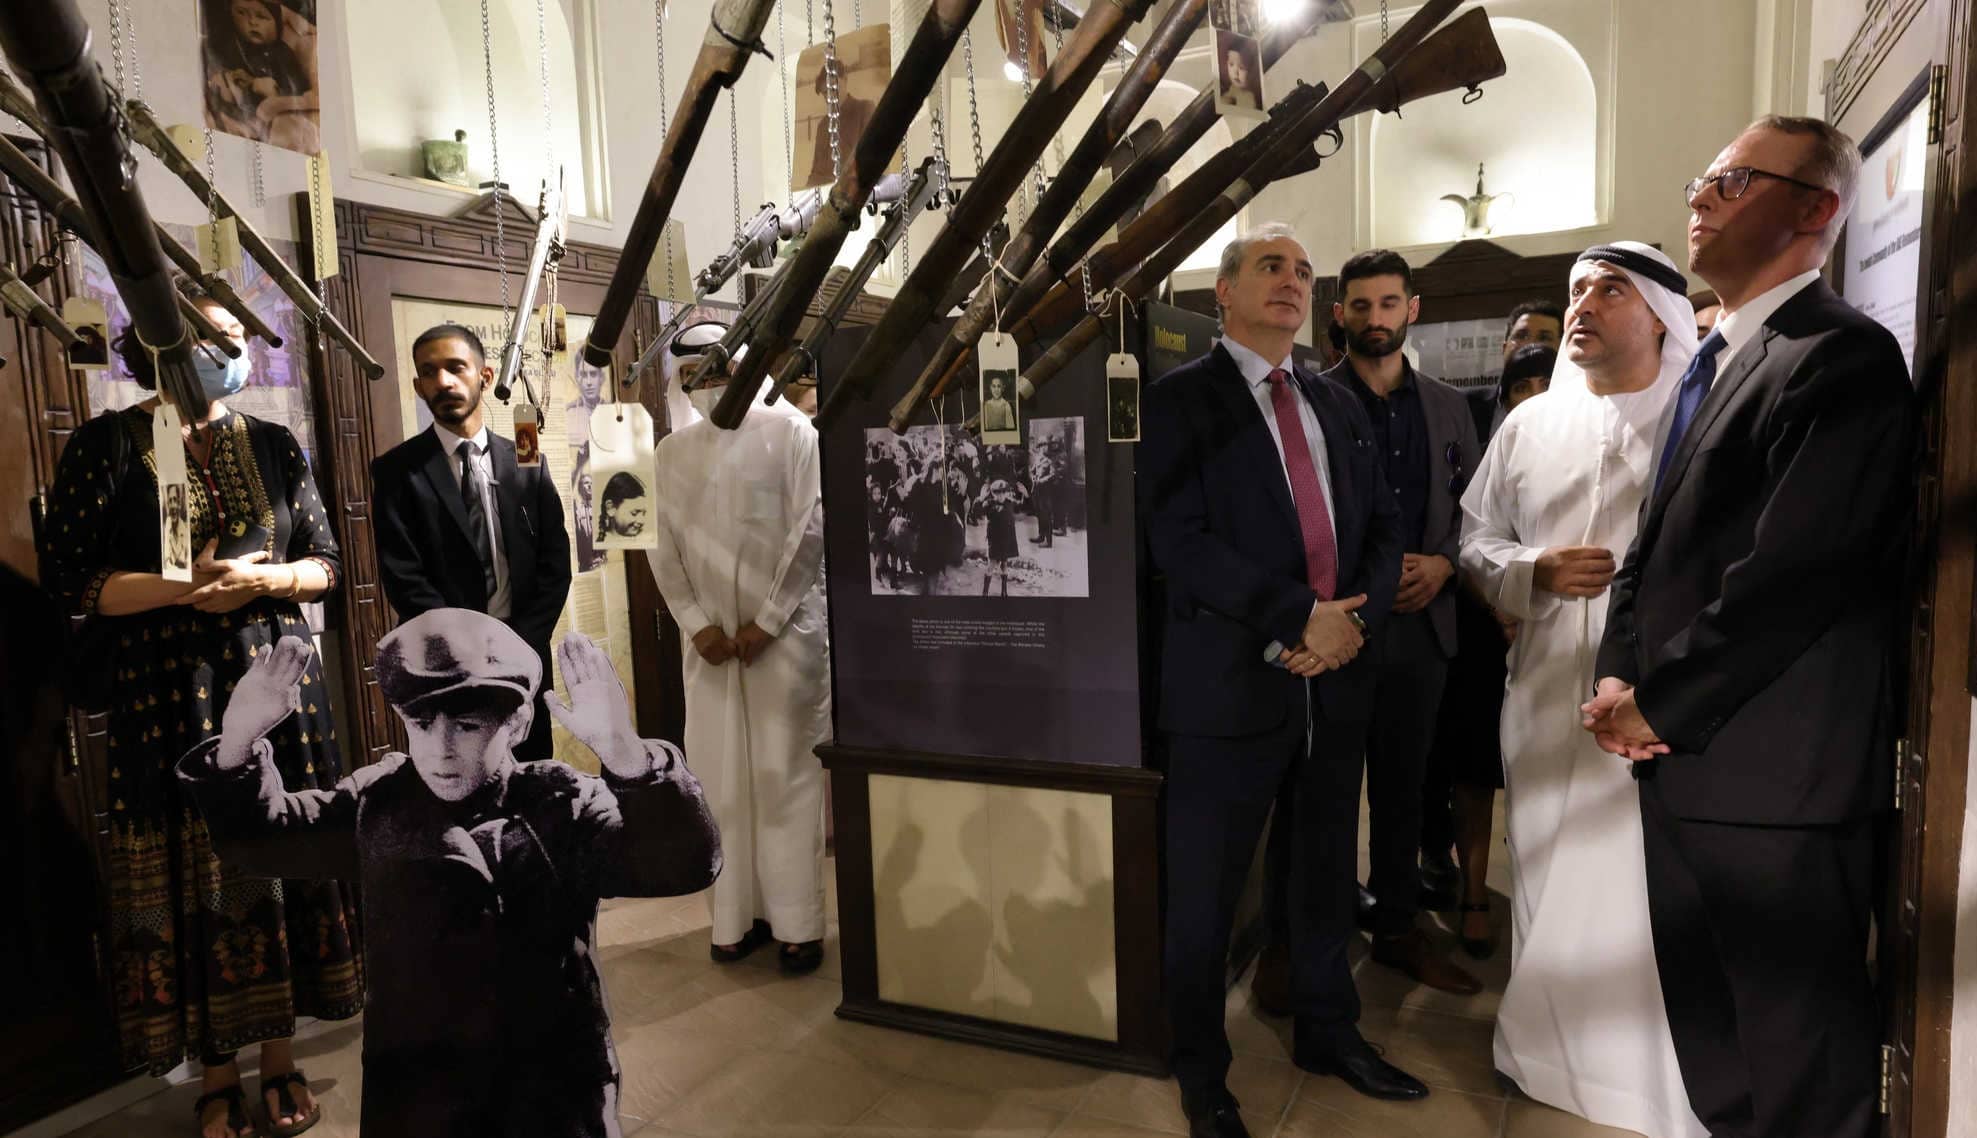 السفير الاسرائيلي في الإمارات يزور معرض للهولوكوست في دبي watanserb.com